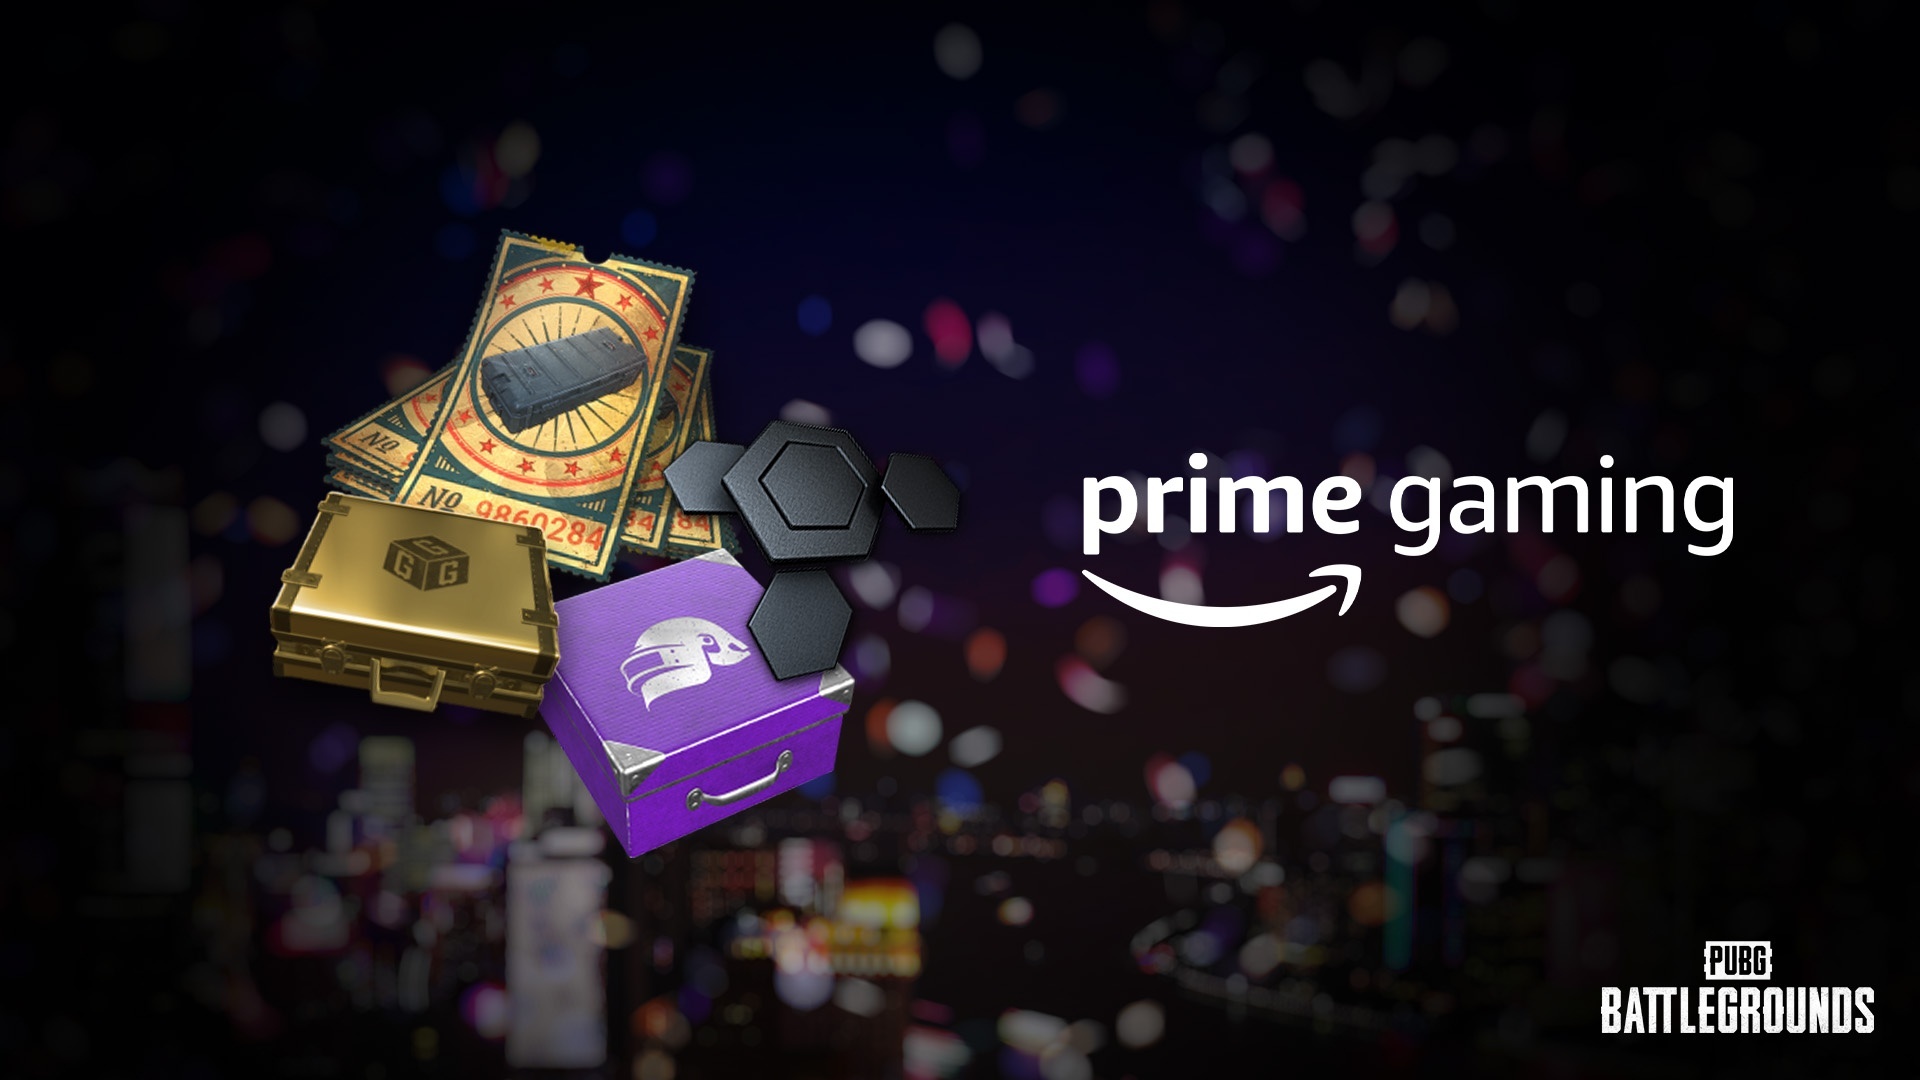 PUBG: BATTLEGROUNDS - Prime Gaming rewards for December